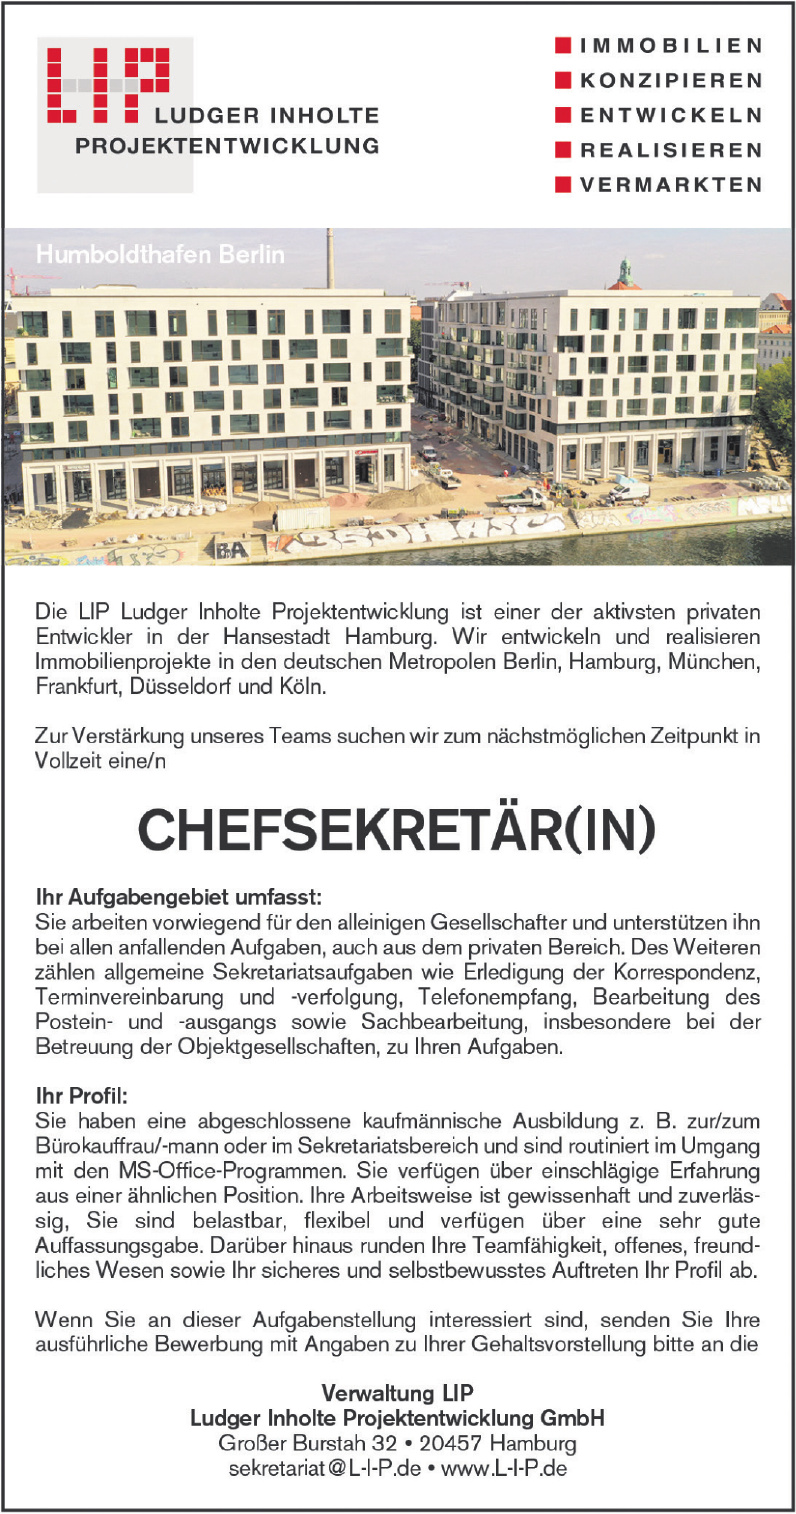 Ludger Inholte Projektentwicklung GmbH 